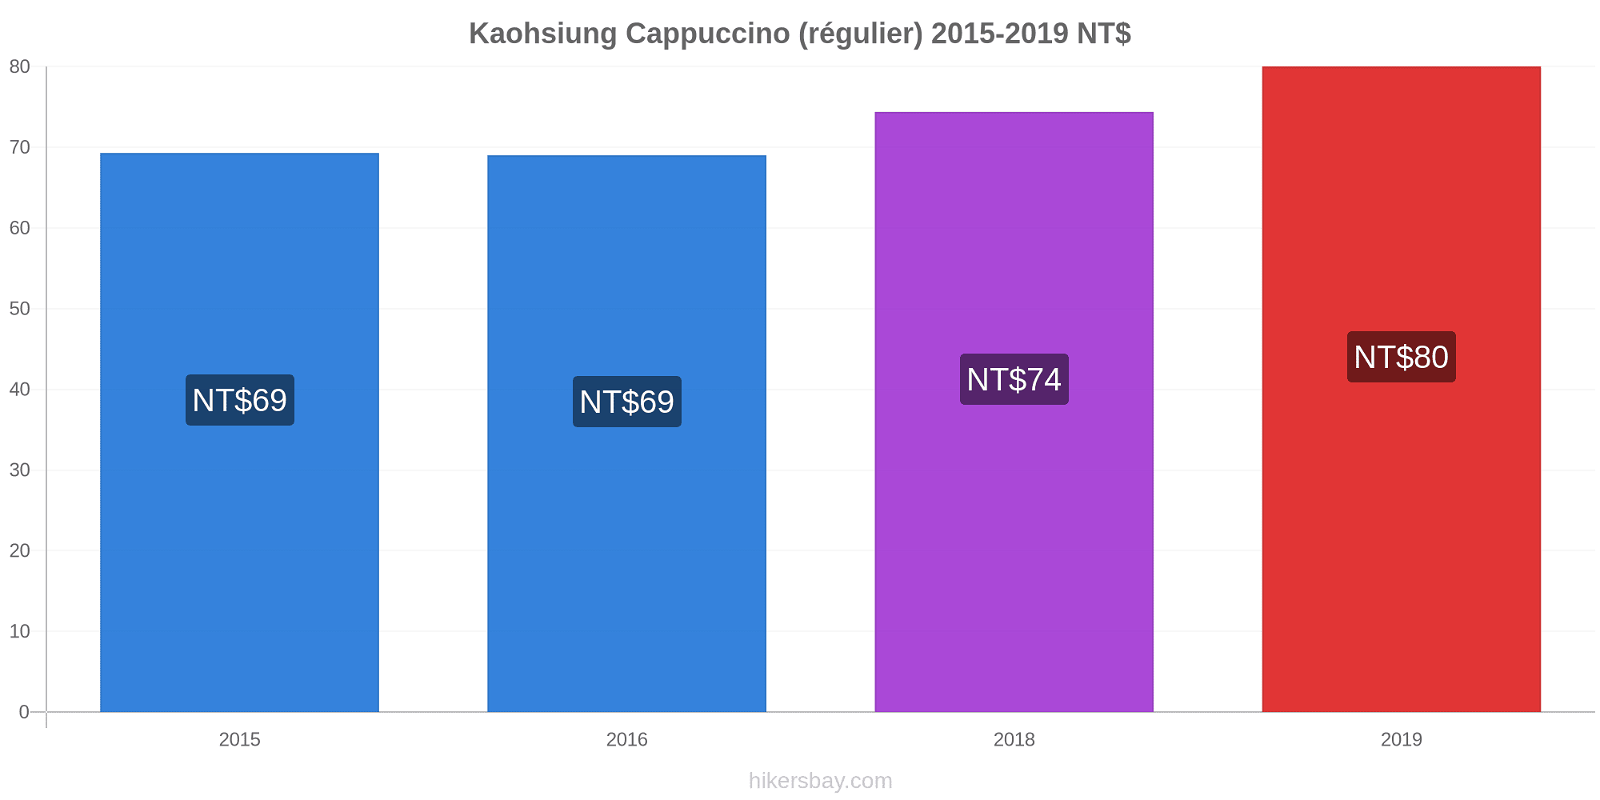 Kaohsiung changements de prix Cappuccino (régulier) hikersbay.com